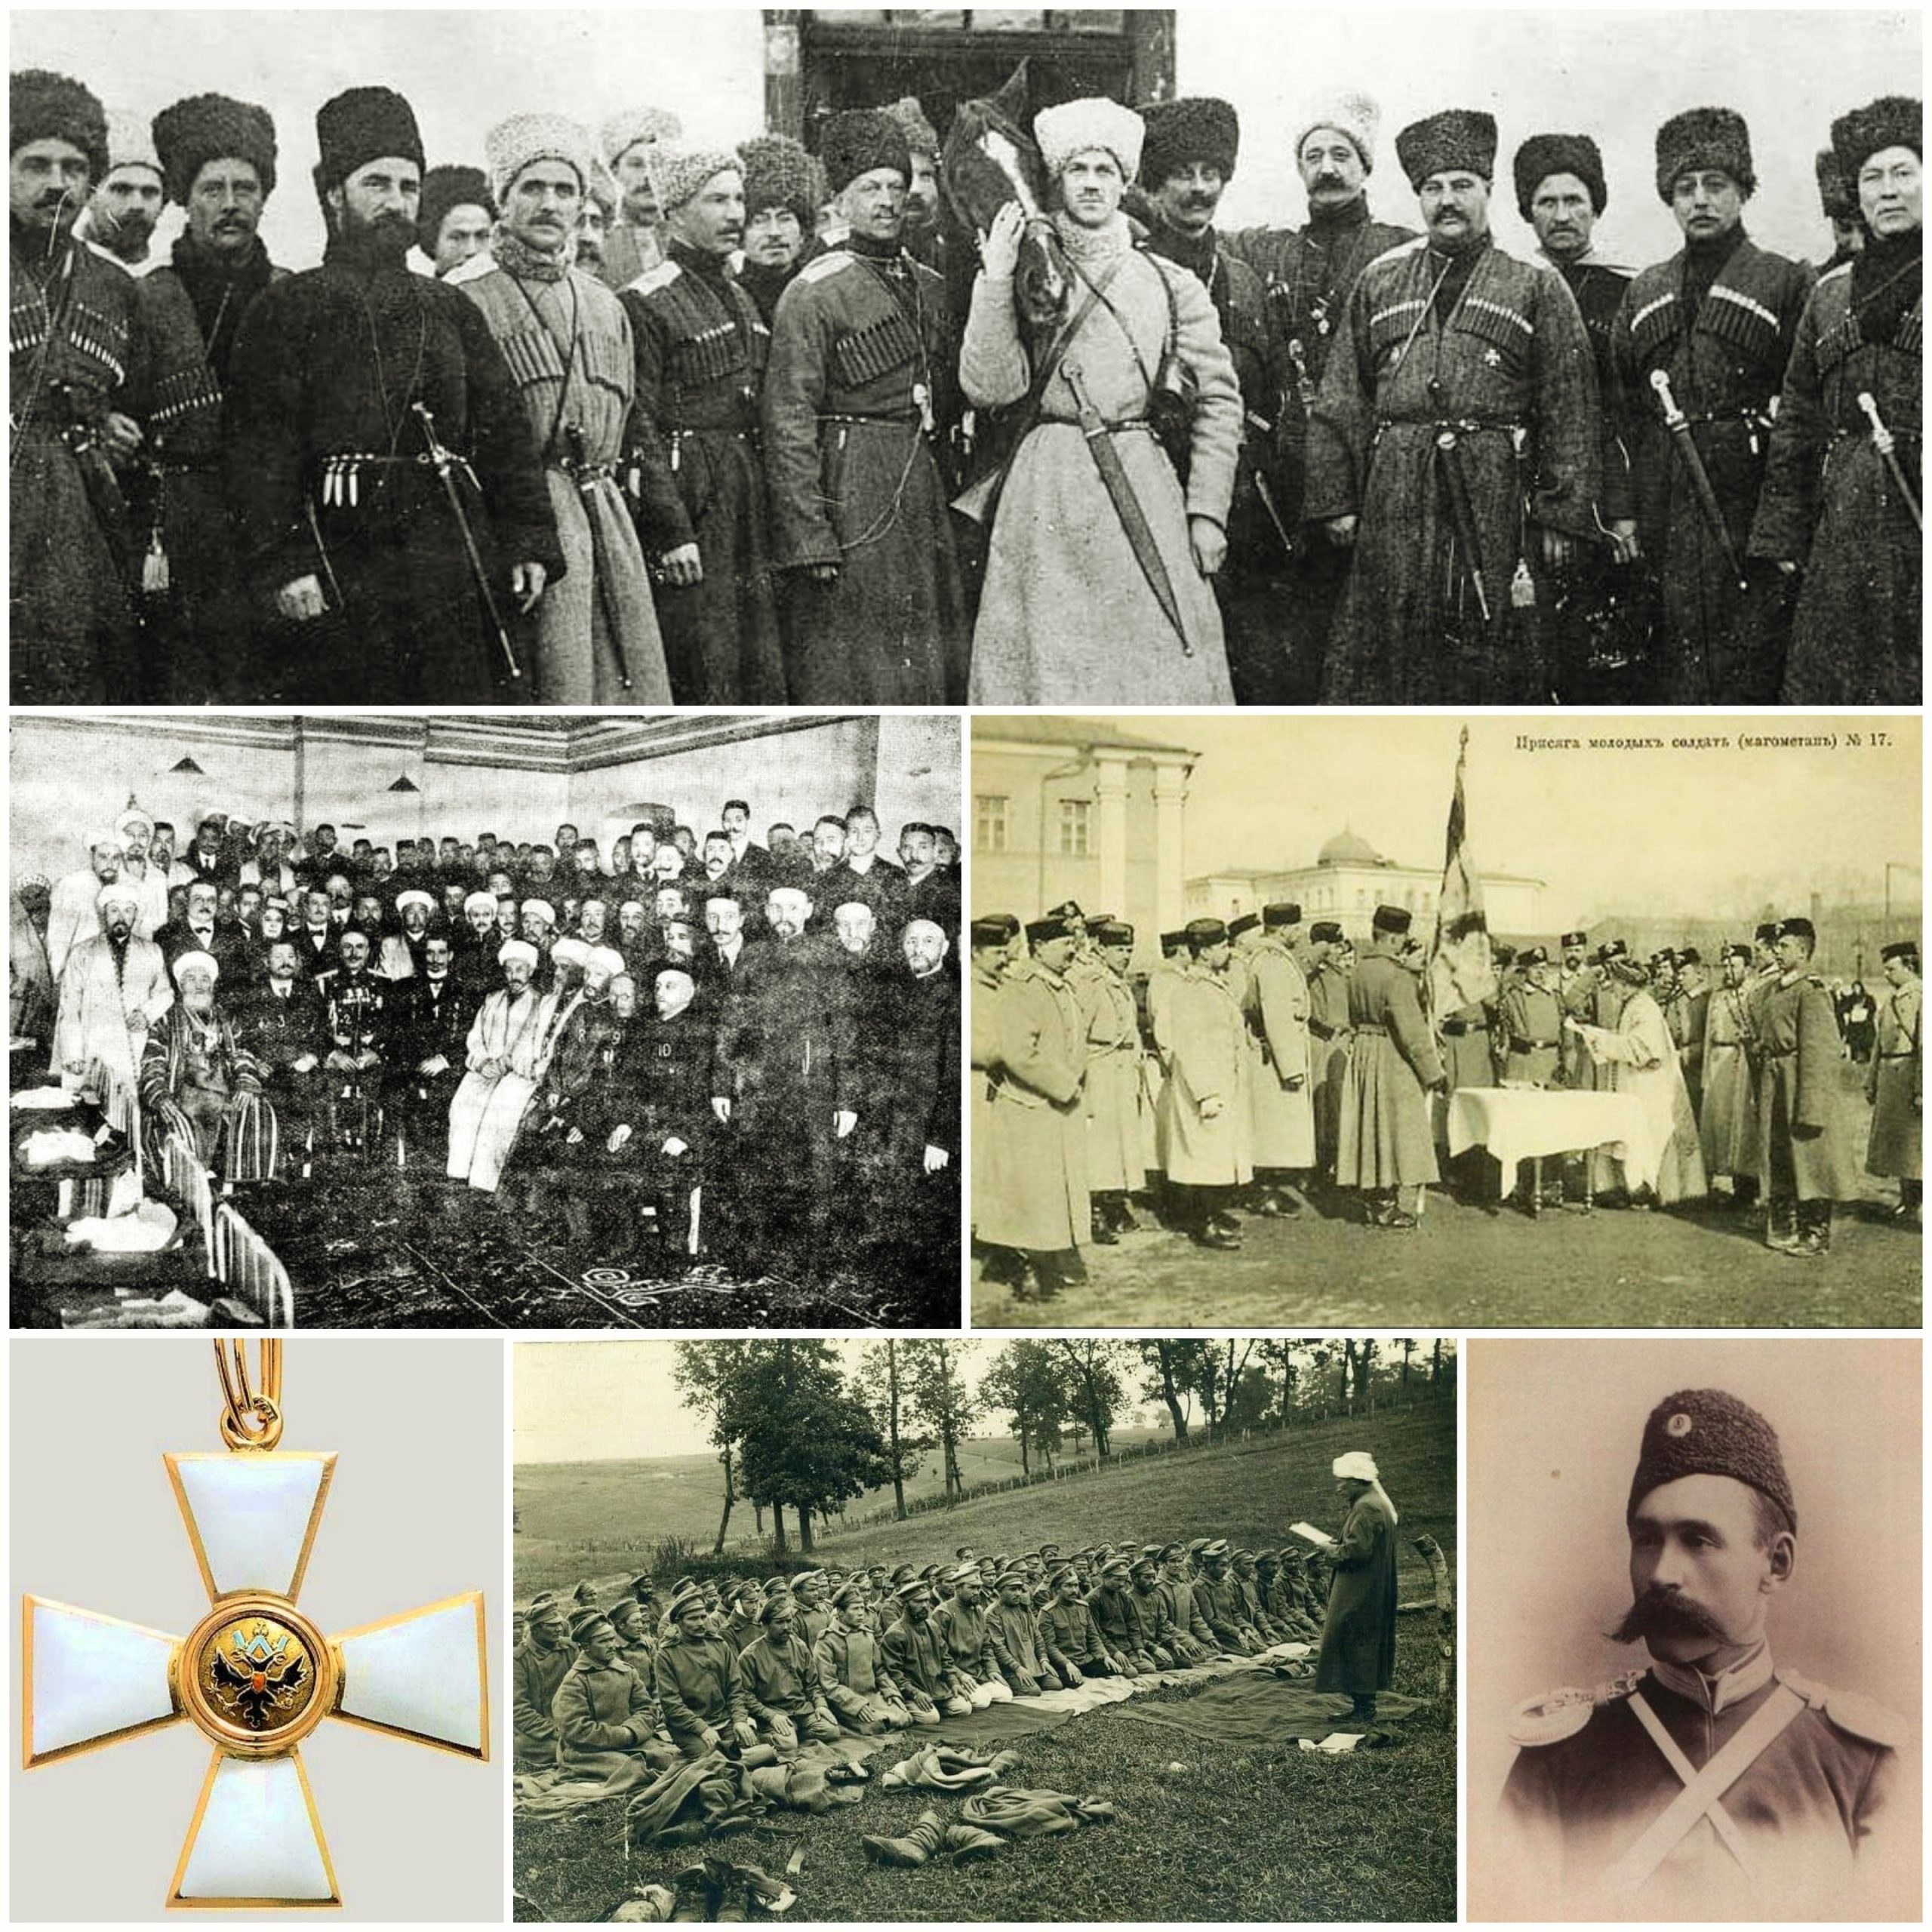 وقف غالبية المسلمين في روسيا القيصرية، في الحرب العالمية الأولى، إلى جانب الحكومة القيصرية